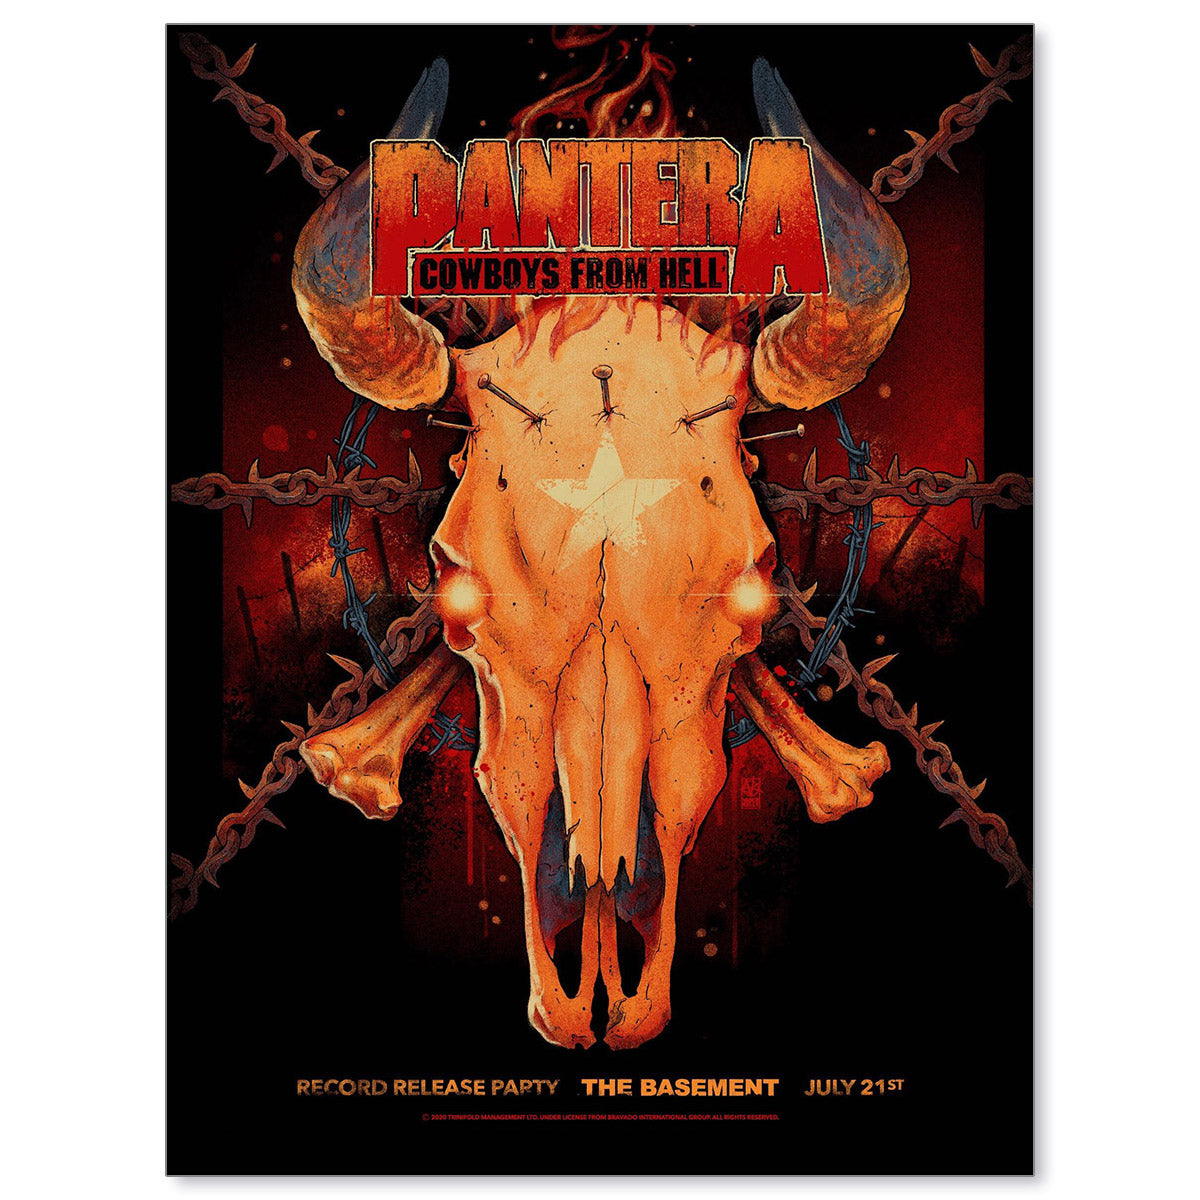 Pantera Dallas 1990 at The Basement by Vance Kelly (Main Edition)